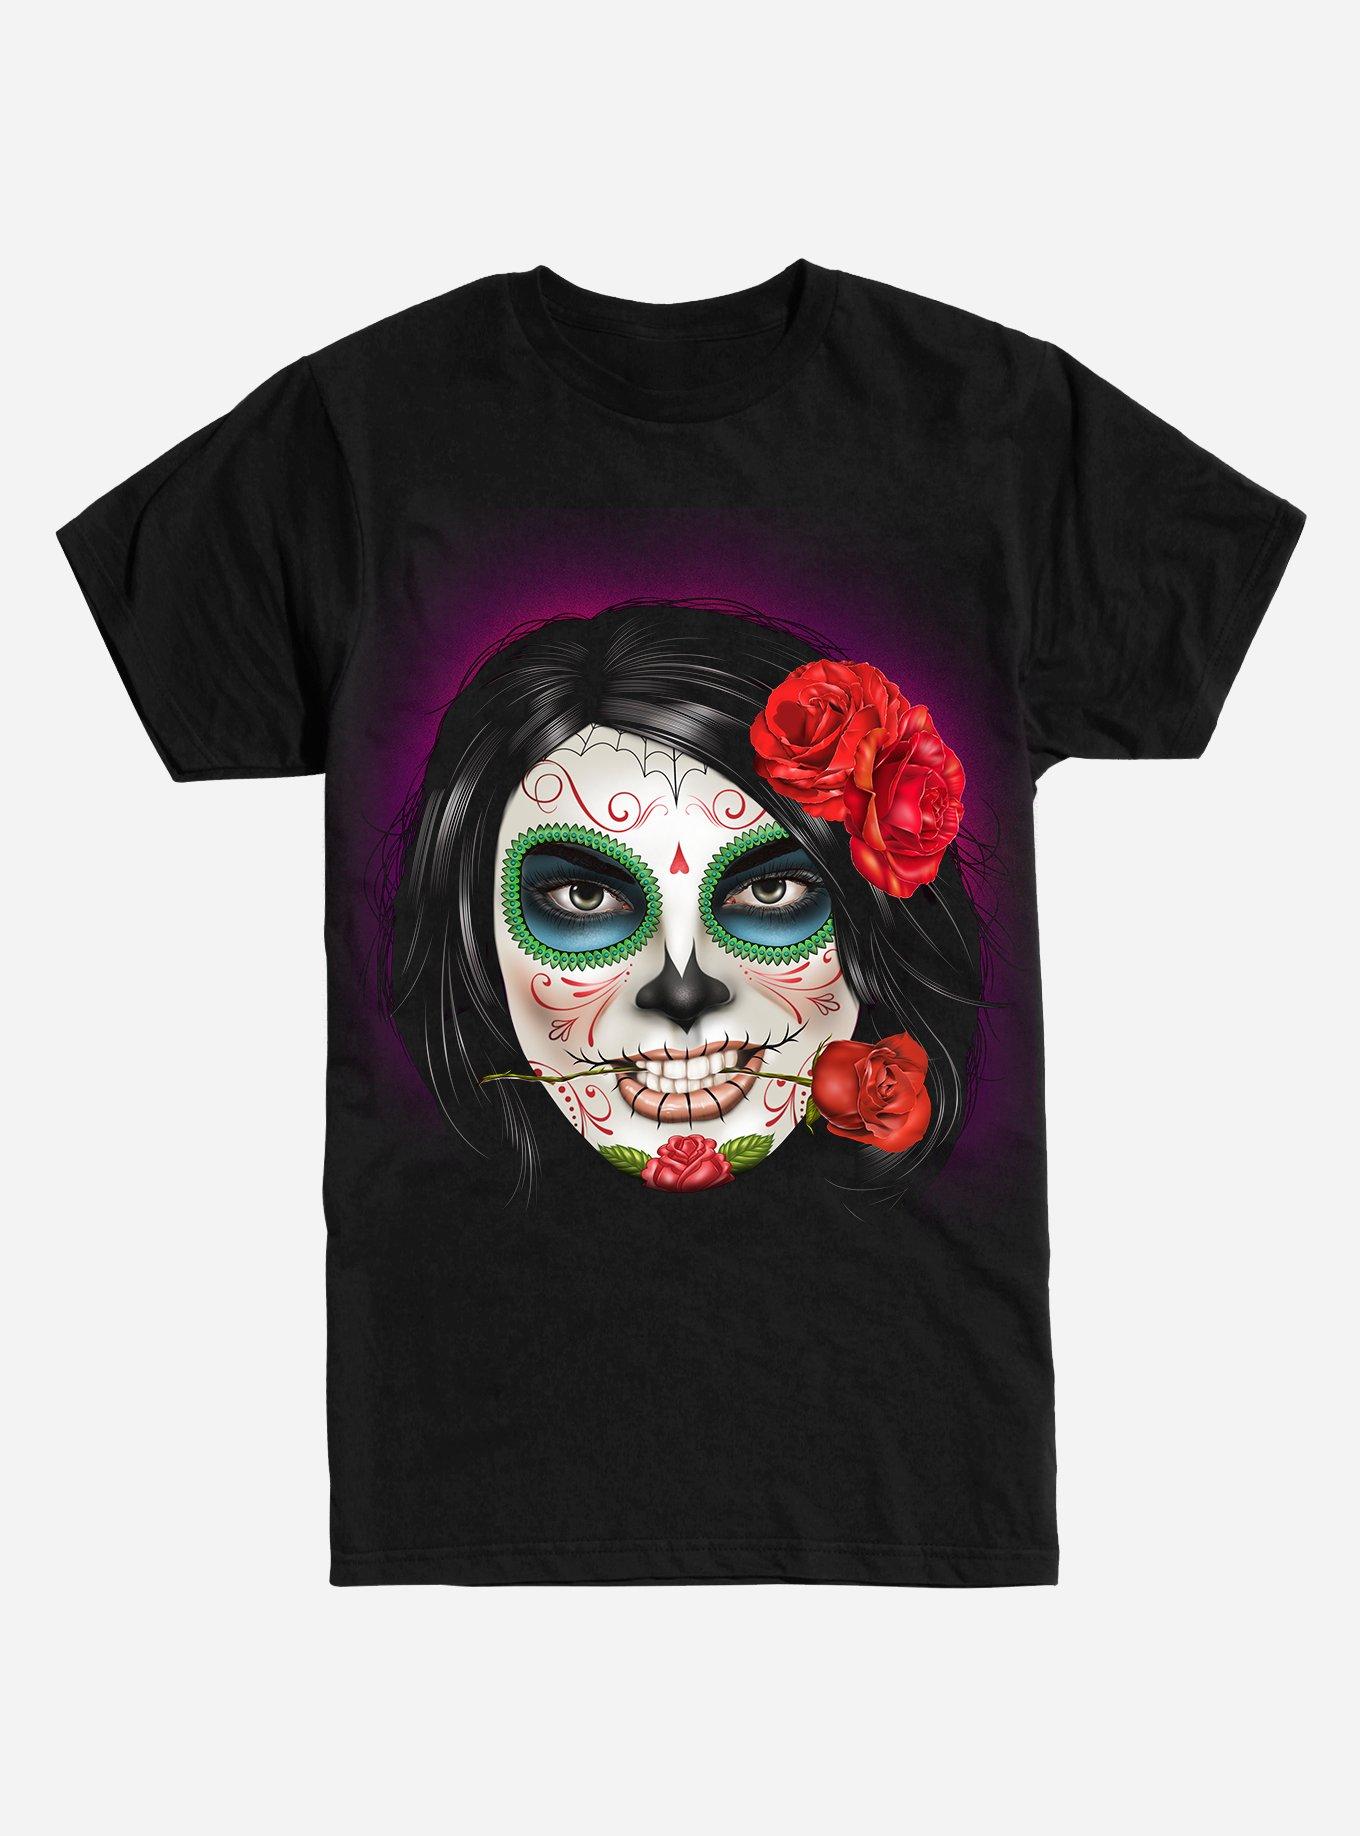 Muertos Girl Sugar Skull T-Shirt